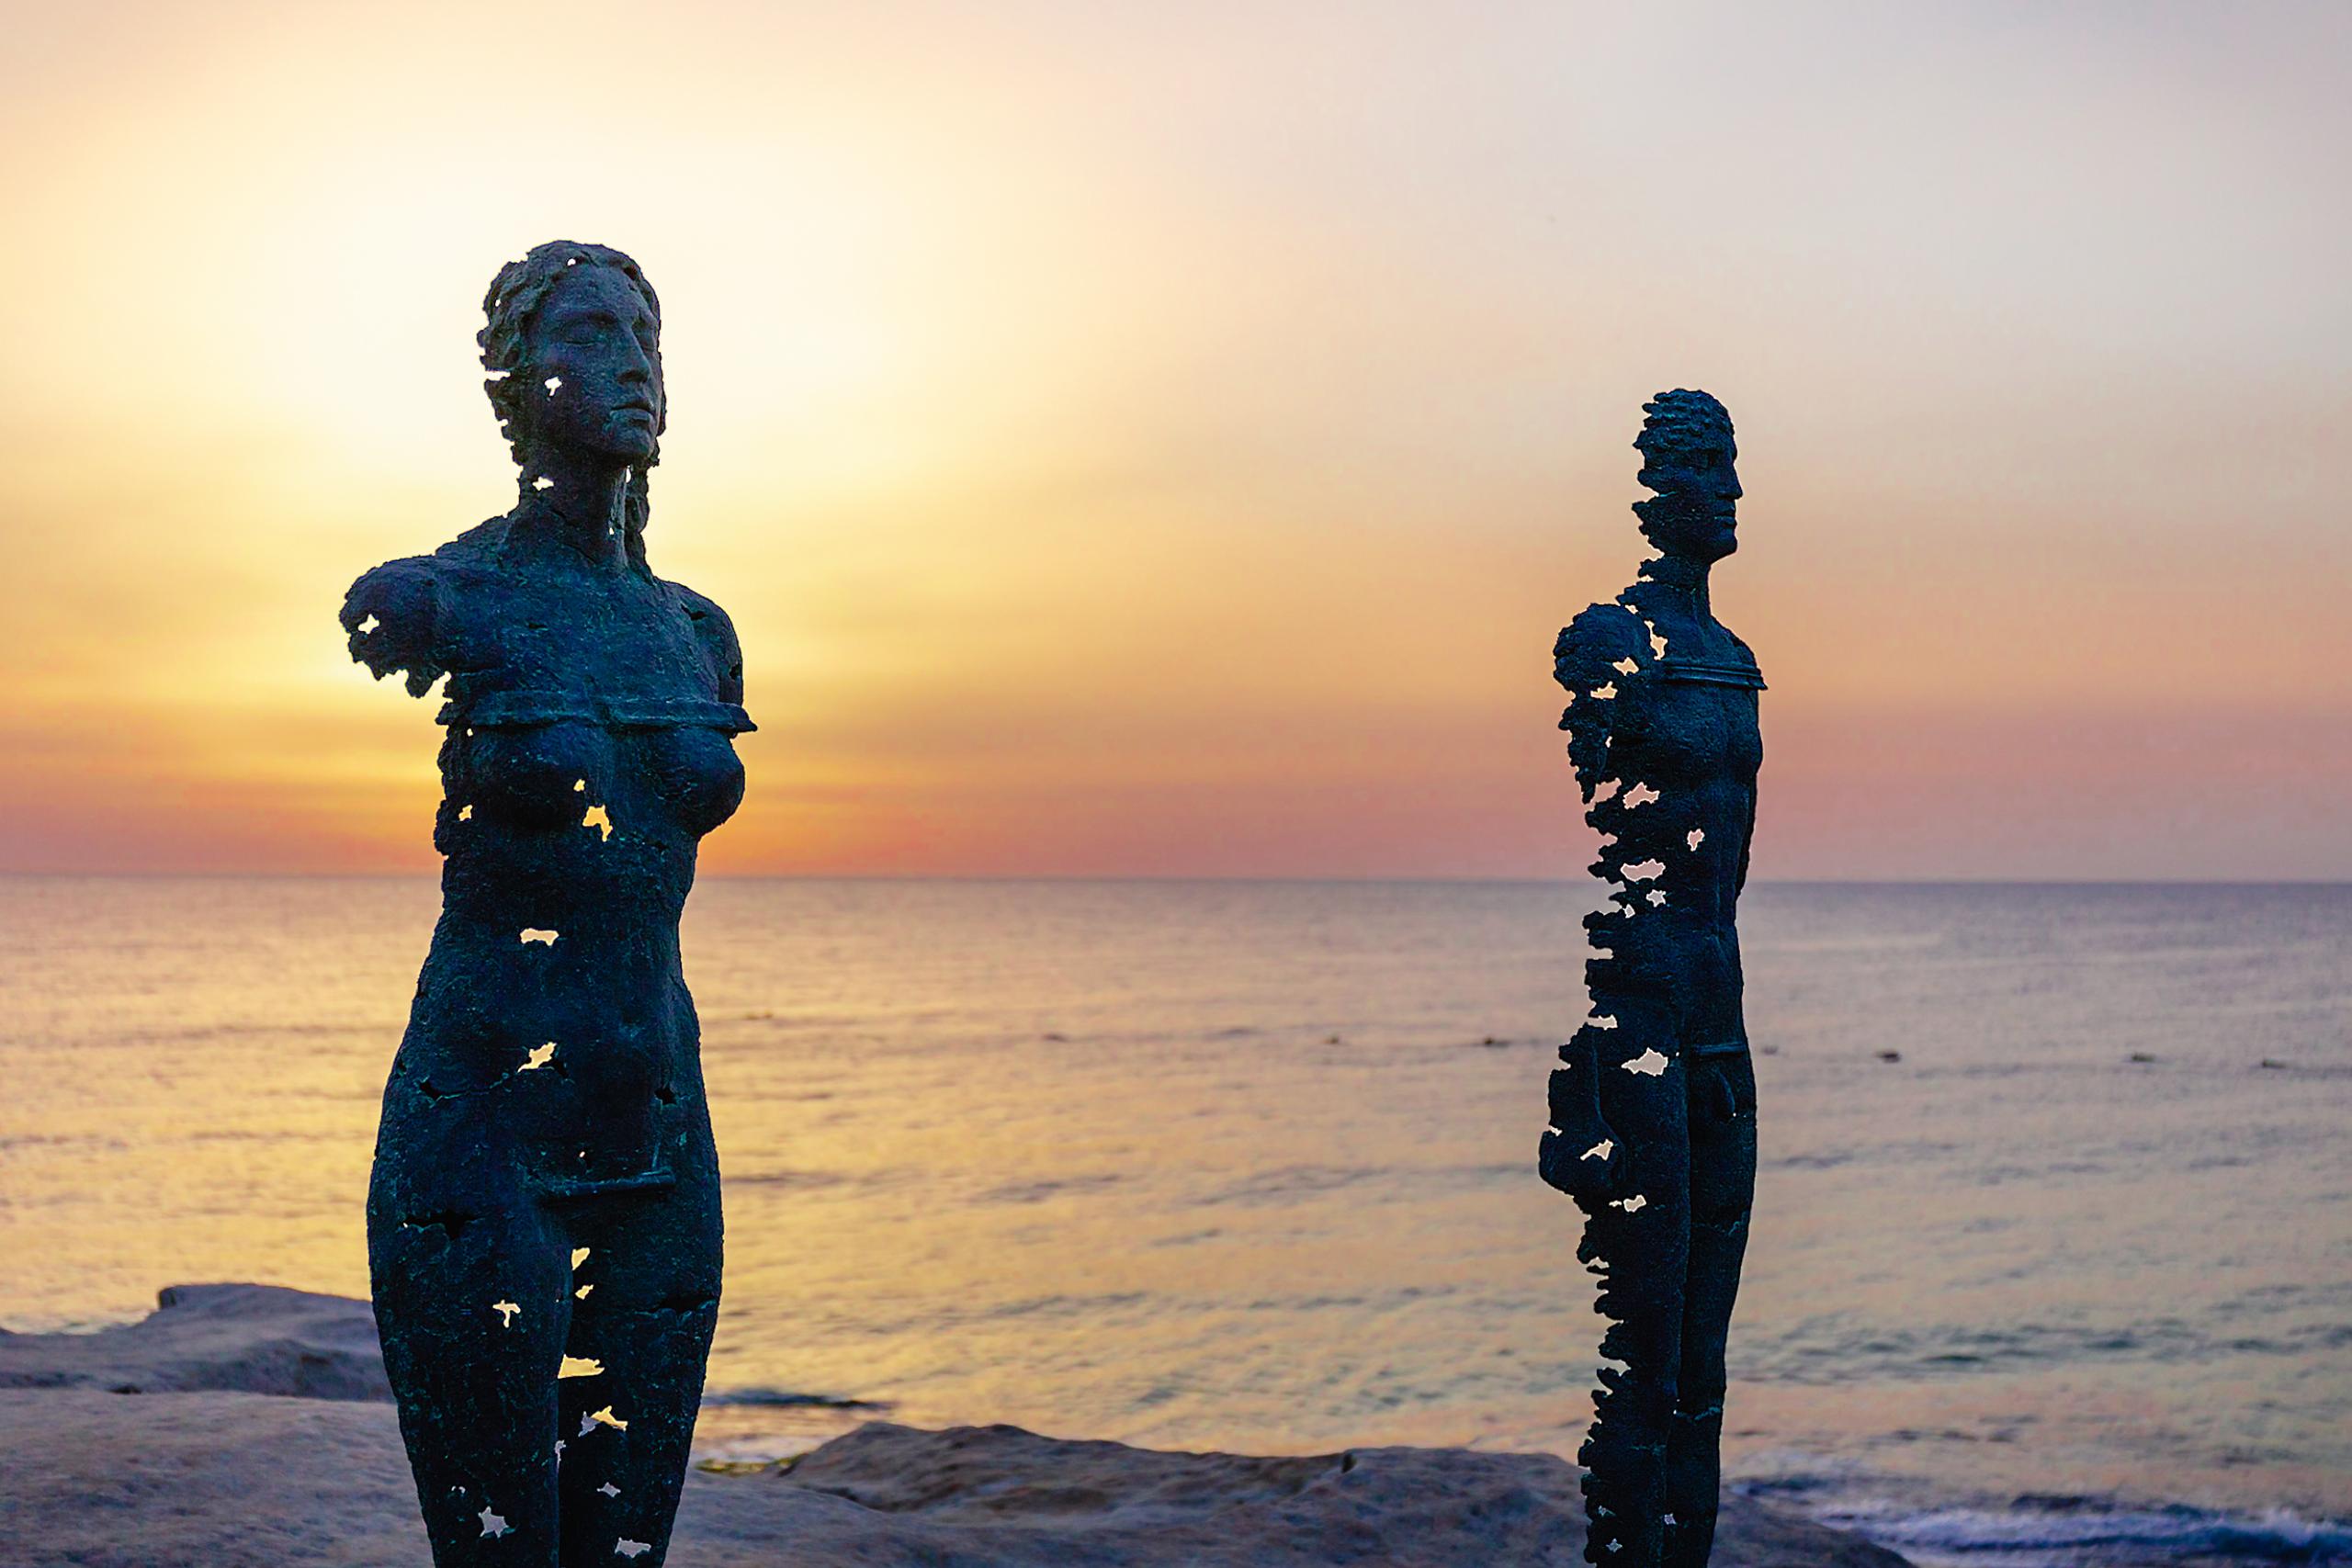 シドニー「ボンダイビーチ」で絶景と彫刻が楽しめる「スカルプチャー・バイ・ザ・シー」が3年ぶりに開催決定！